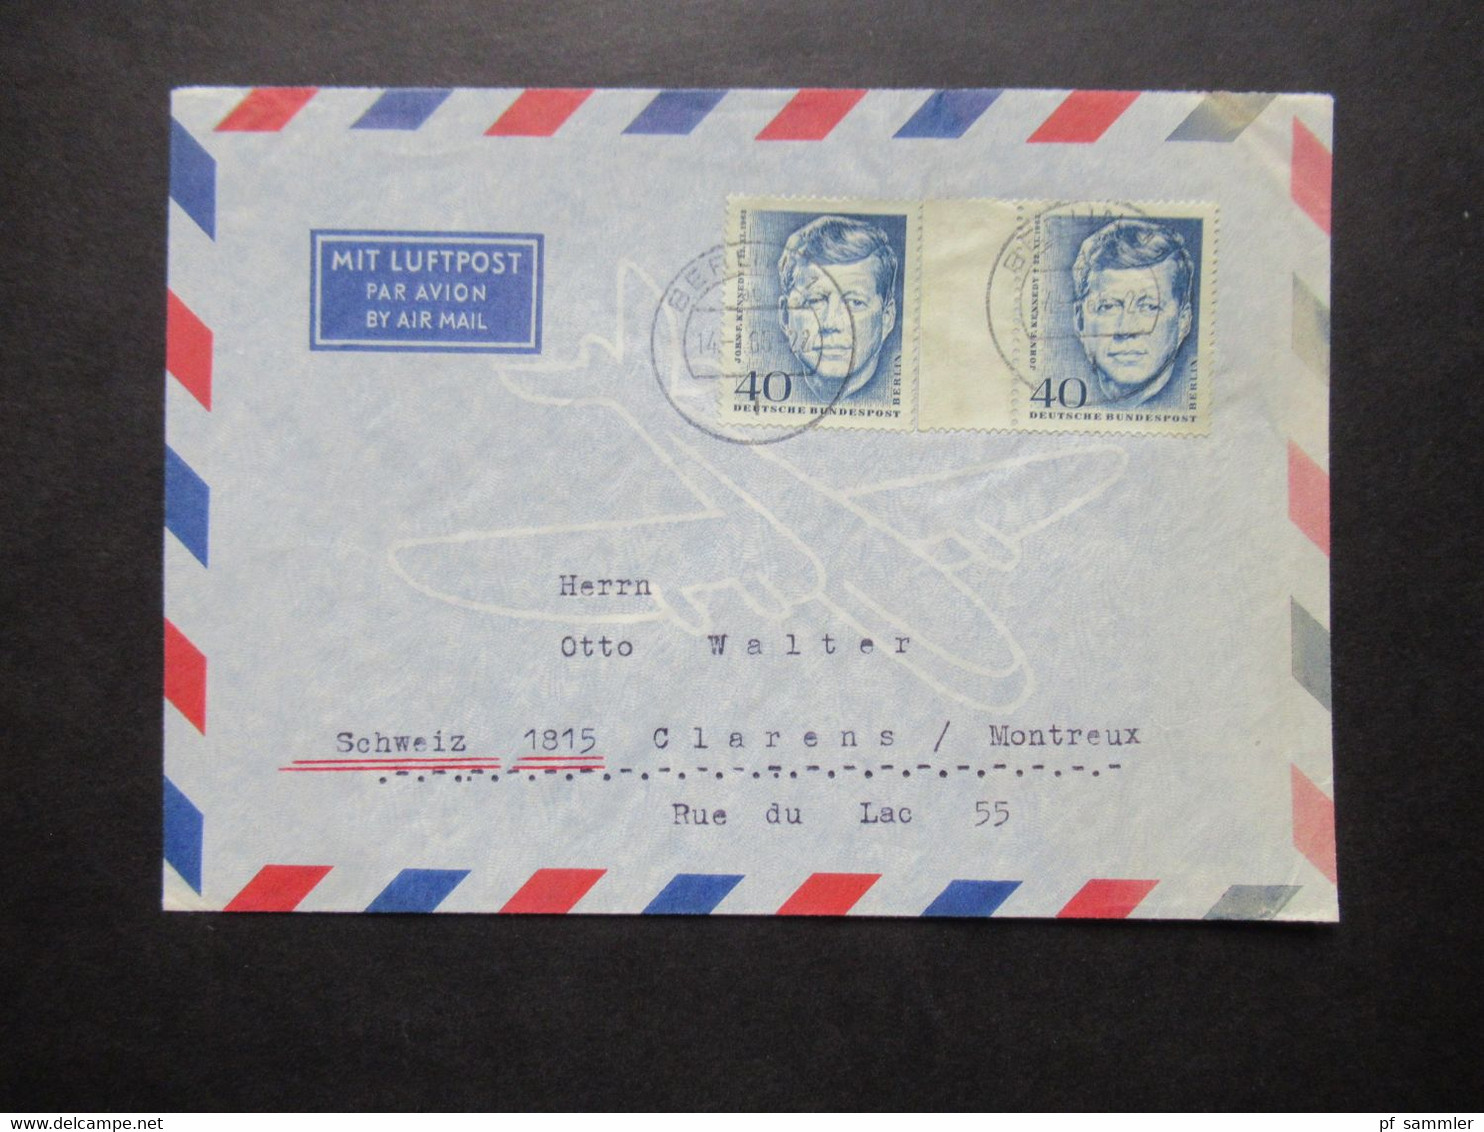 1964 Berlin (West) John F. Kennedy Nr.241 (2) MeF Auslandsbrief Mit Luftpost Berlin - Clarens Montreux Schweiz - Covers & Documents